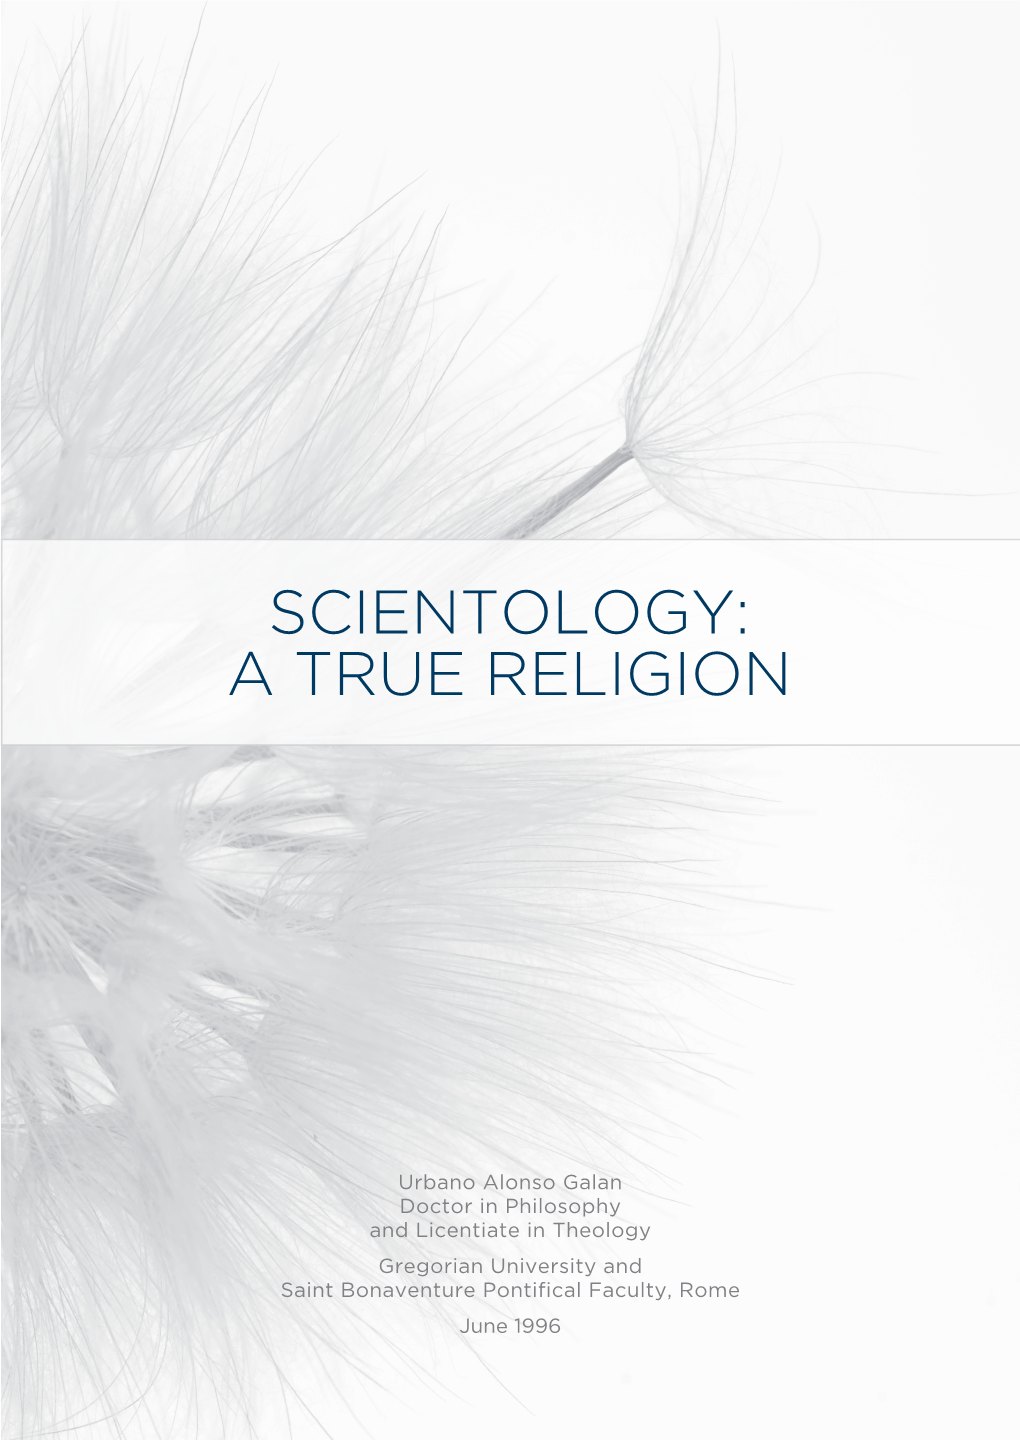 Scn a True Religion.Indd 1 1/4/2015 2:38:34 PM Scn a True Religion.Indd 2 1/4/2015 2:38:34 PM Scientology: a True Religion Contents